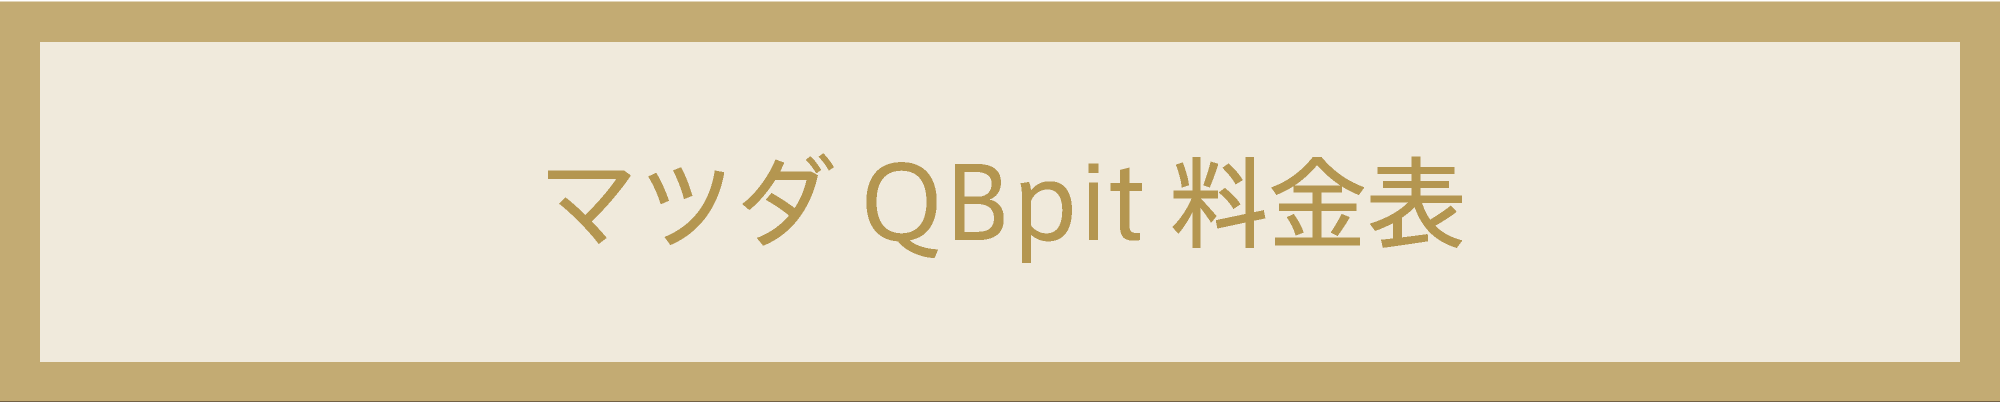 マツダ QBpit 料金表